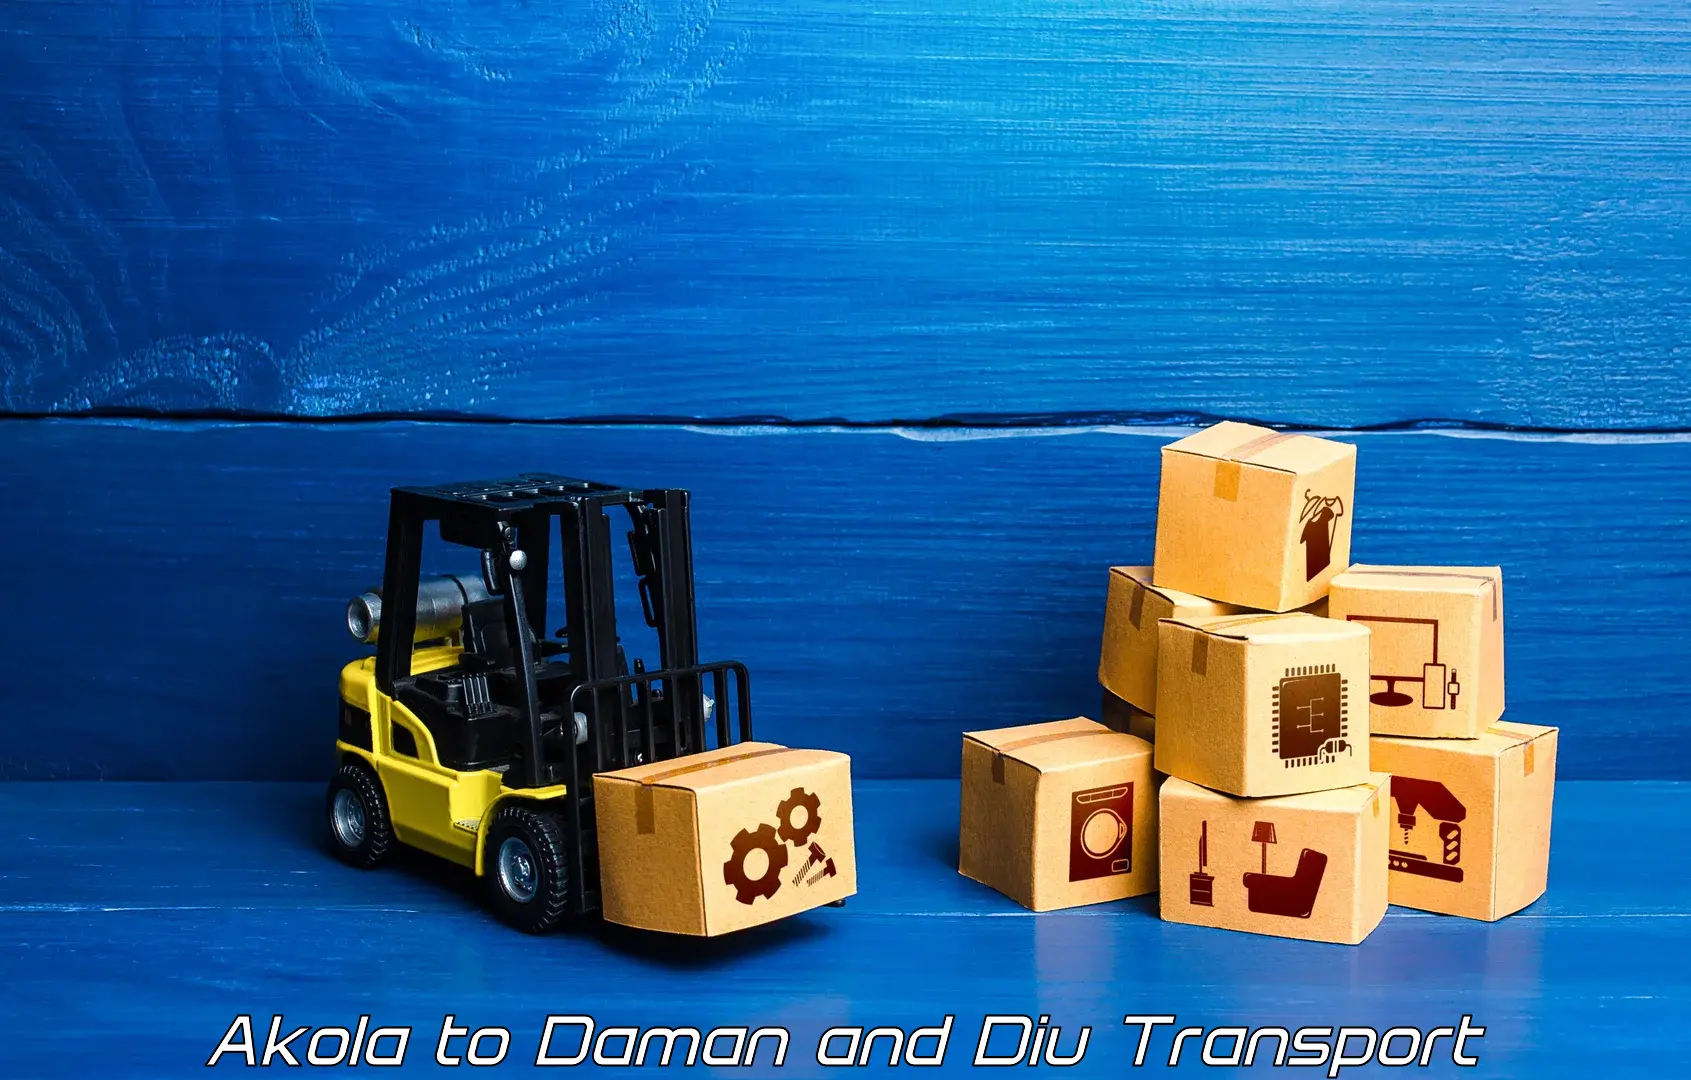 India truck logistics services Akola to Daman and Diu